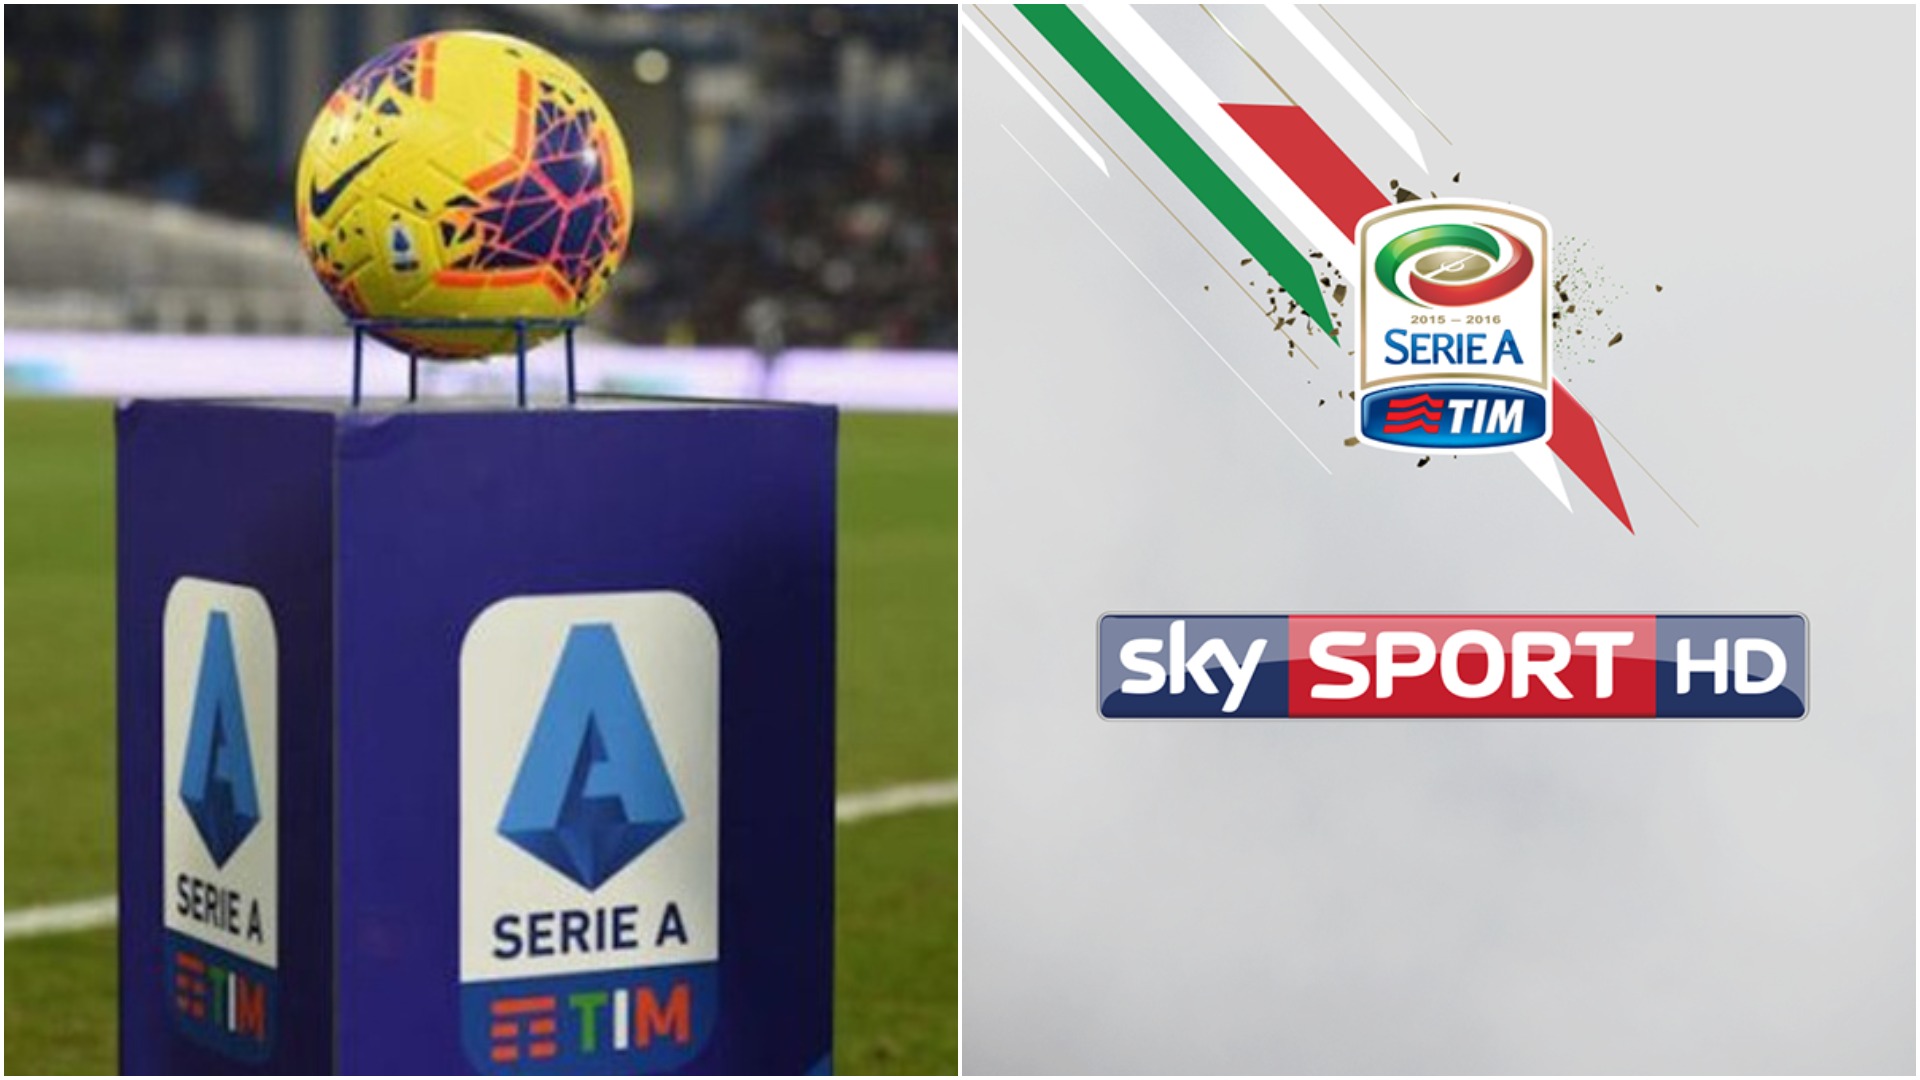 Nuk janë paguar 131 milion euro, Serie A ka një ultimatum për SkySport!